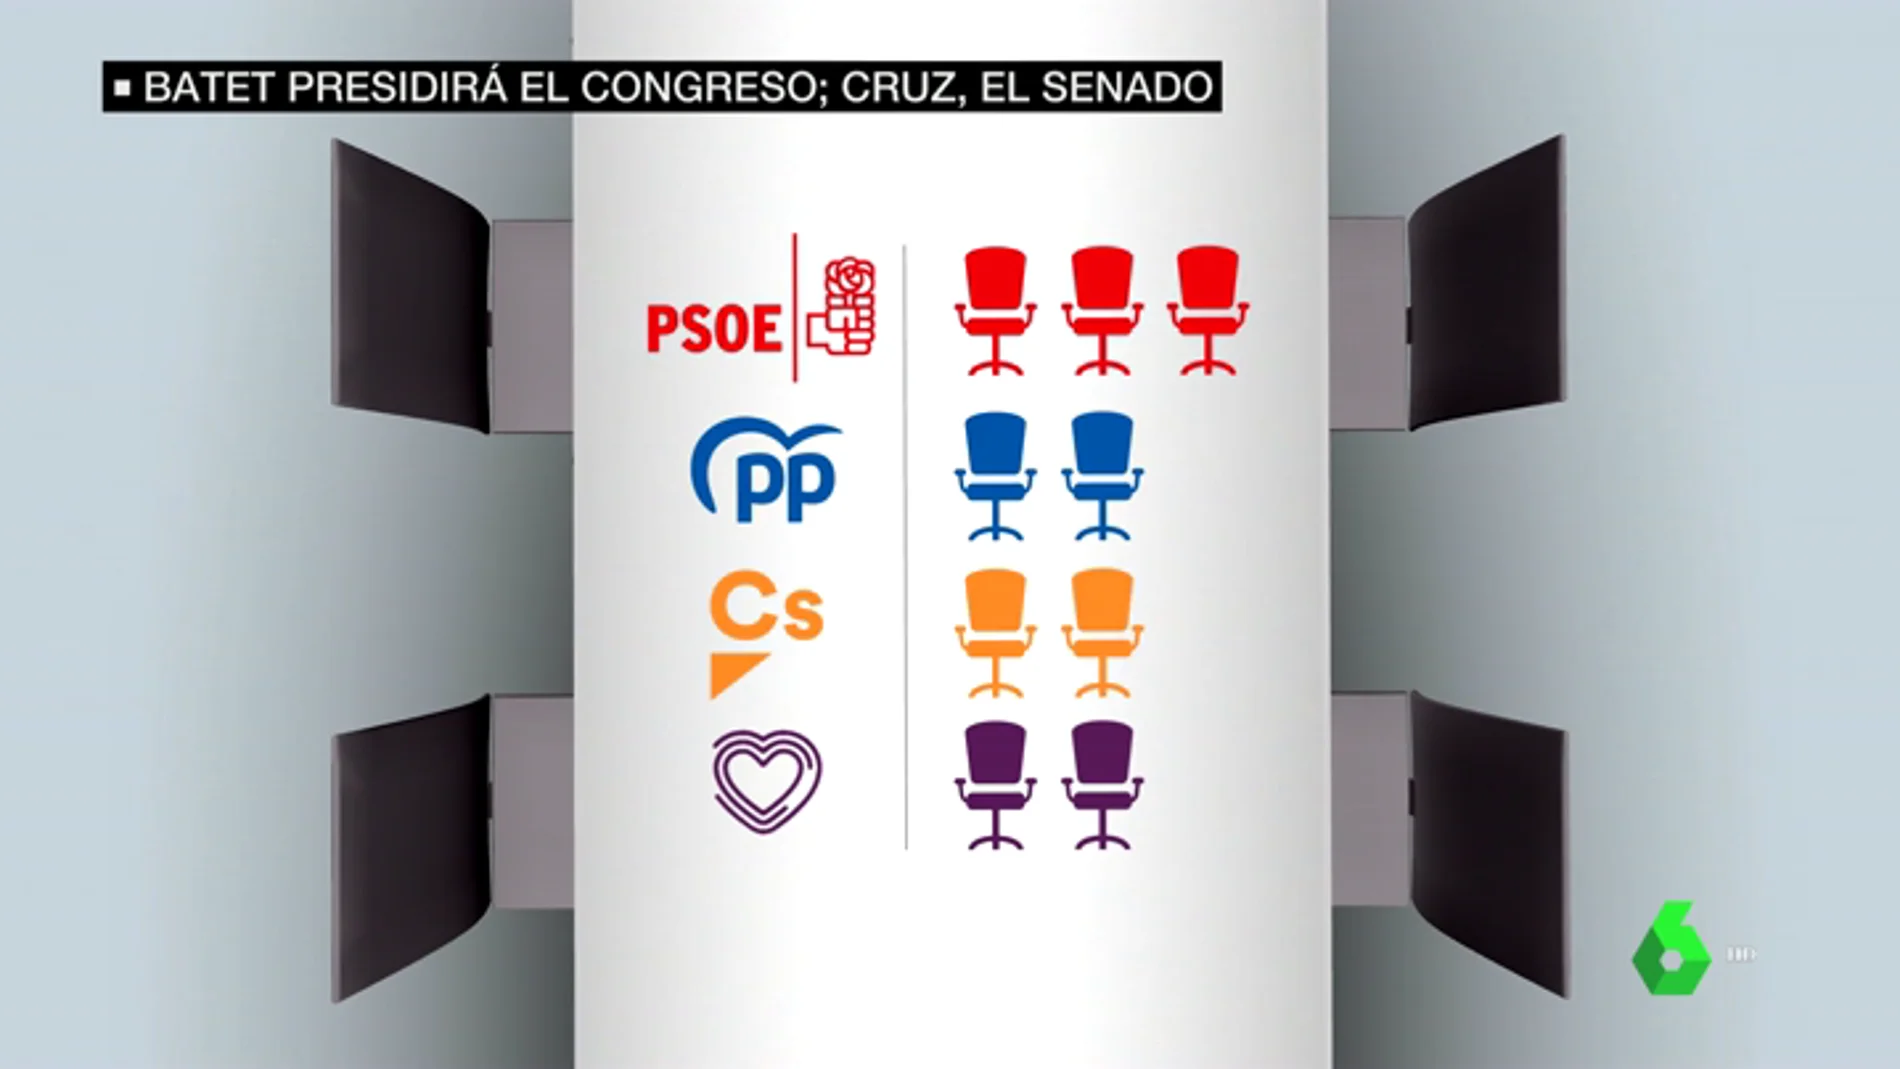 El PSOE y Podemos llegan a un acuerdo para la Mesa del Congreso: la izquierda tendrá mayoría